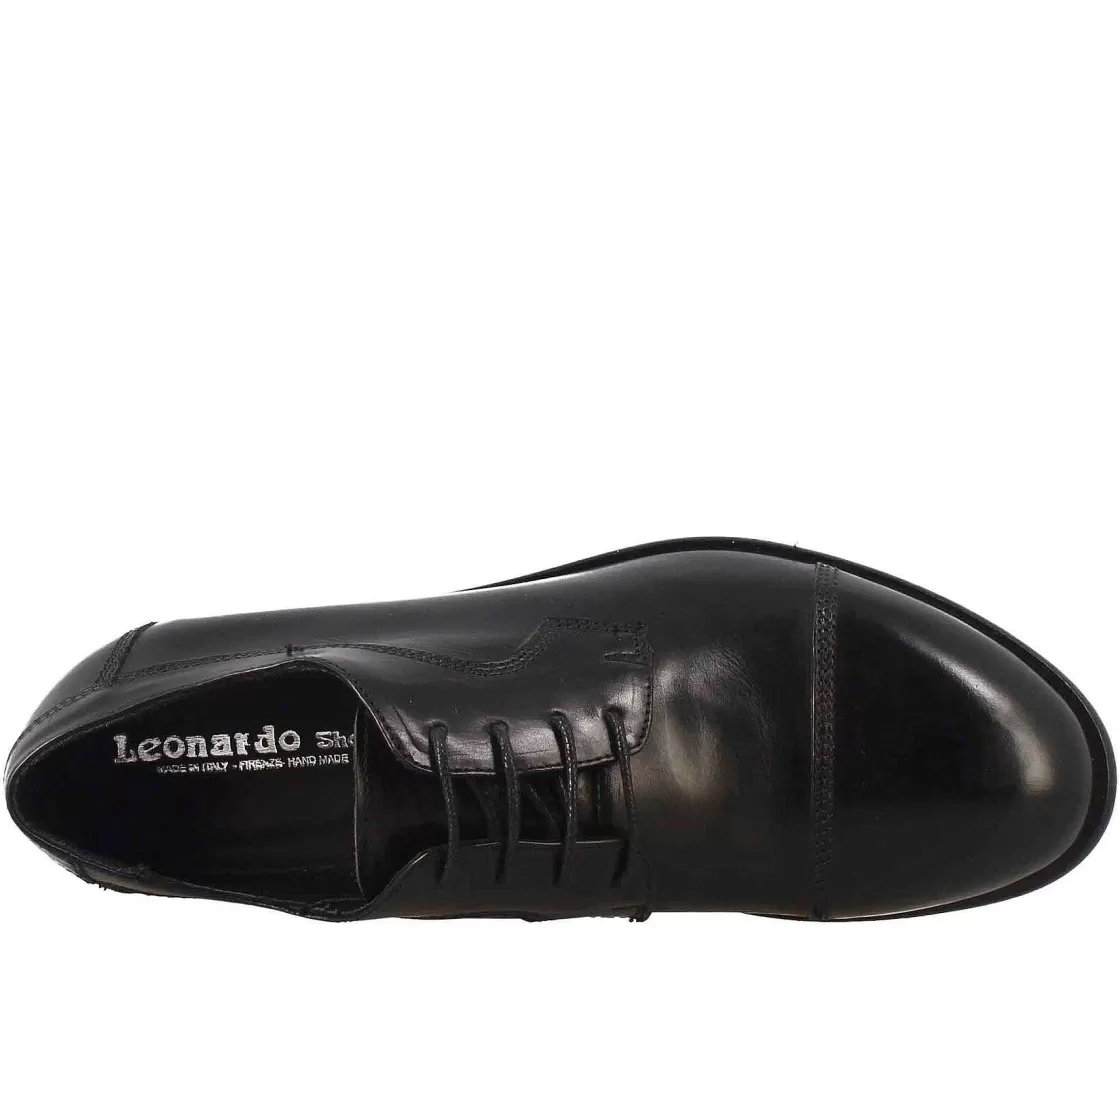 Leonardo Women'S Handmade Low Laced Shoe In Black Leather Outlet